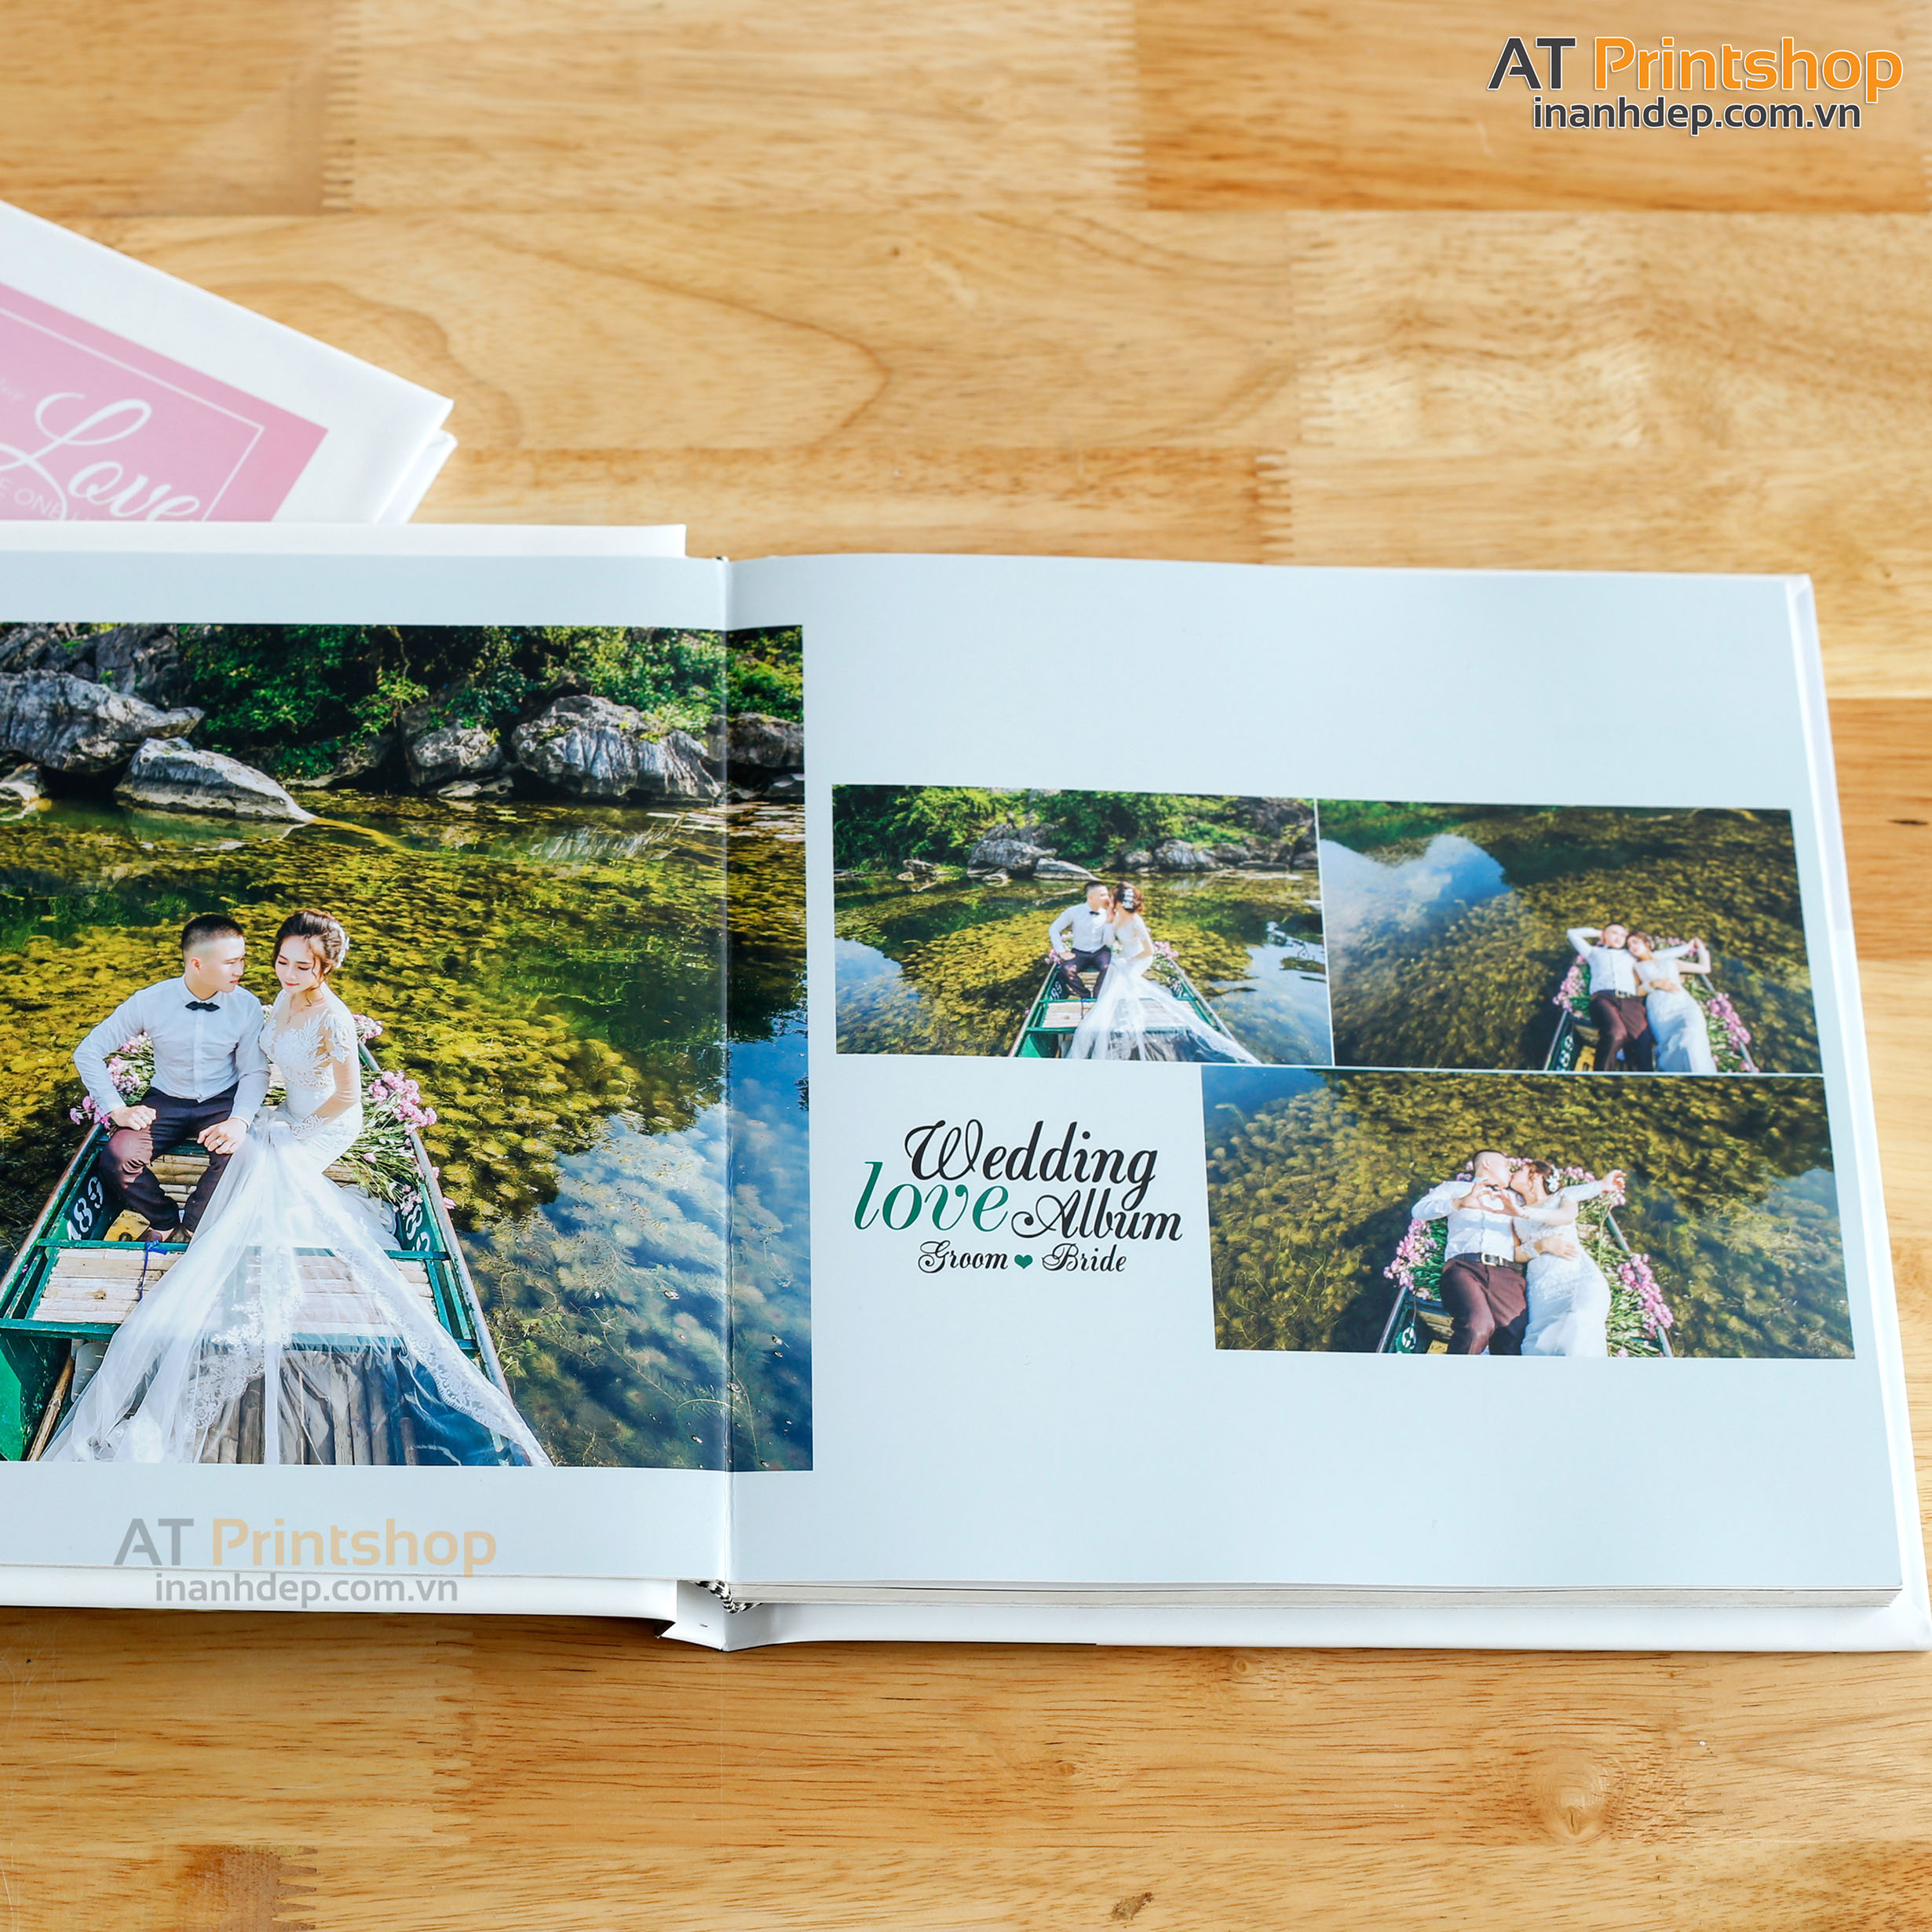 Photobook Cưới: Với đầy đủ kĩ thuật và kiến thức chuyên môn, photobook cưới là một trong những lựa chọn tốt nhất cho ngày cưới của bạn. Bạn sẽ được truyền tải những thông điệp, cảm xúc và kỷ niệm của mình trong một tác phẩm nghệ thuật hoàn hảo. Đây chắc chắn là một cách thưởng thức ảnh đích thực.